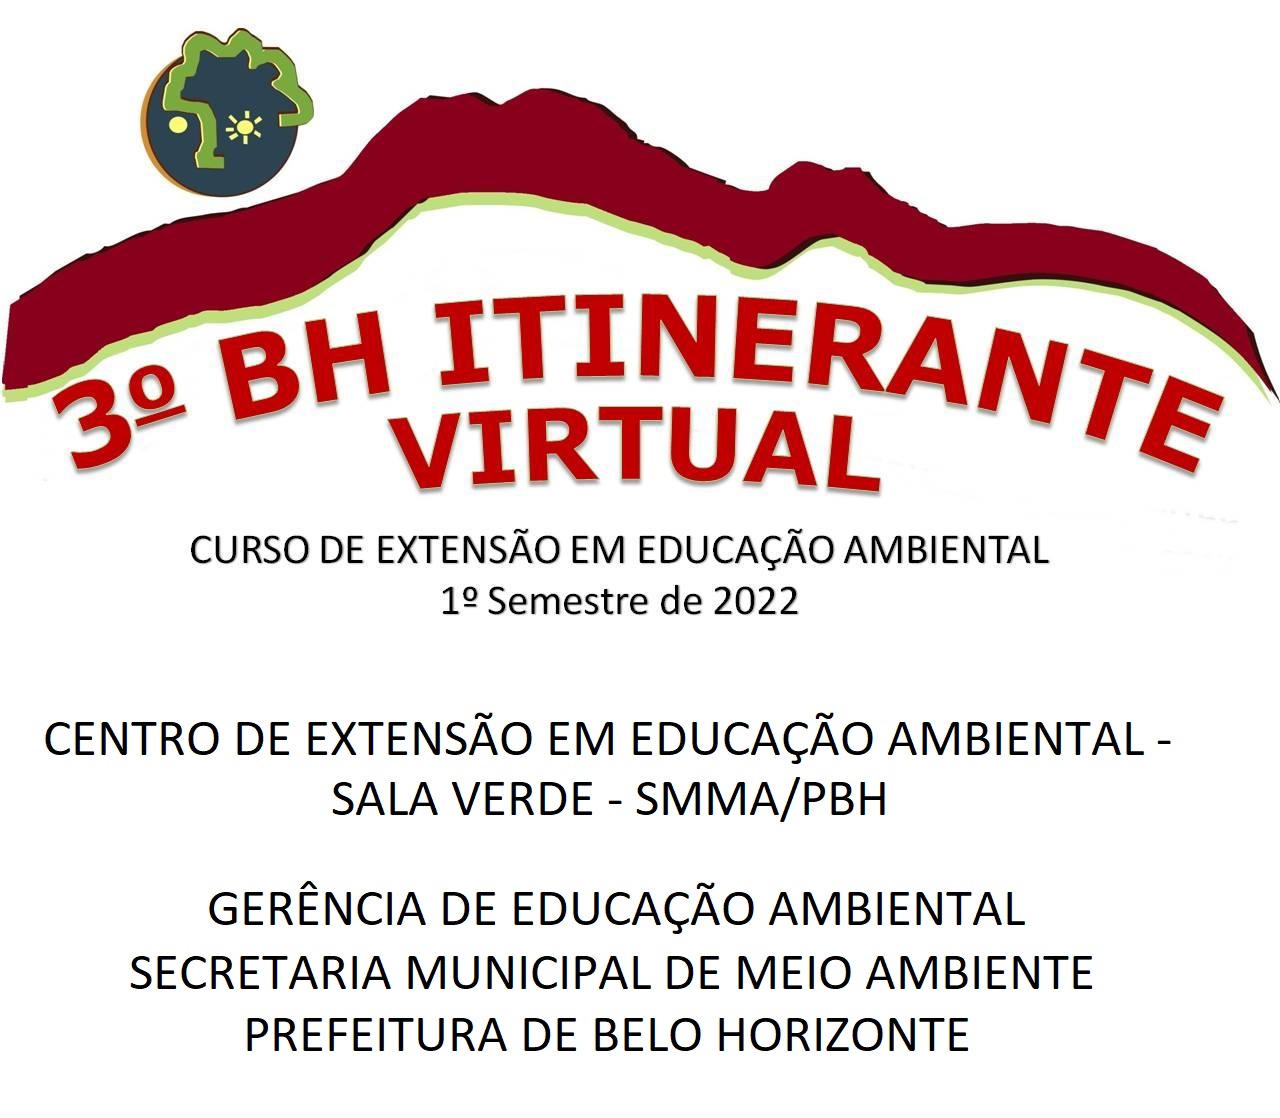 3º BH Itinerante Virtual: Curso de Extensão em Educação Ambiental